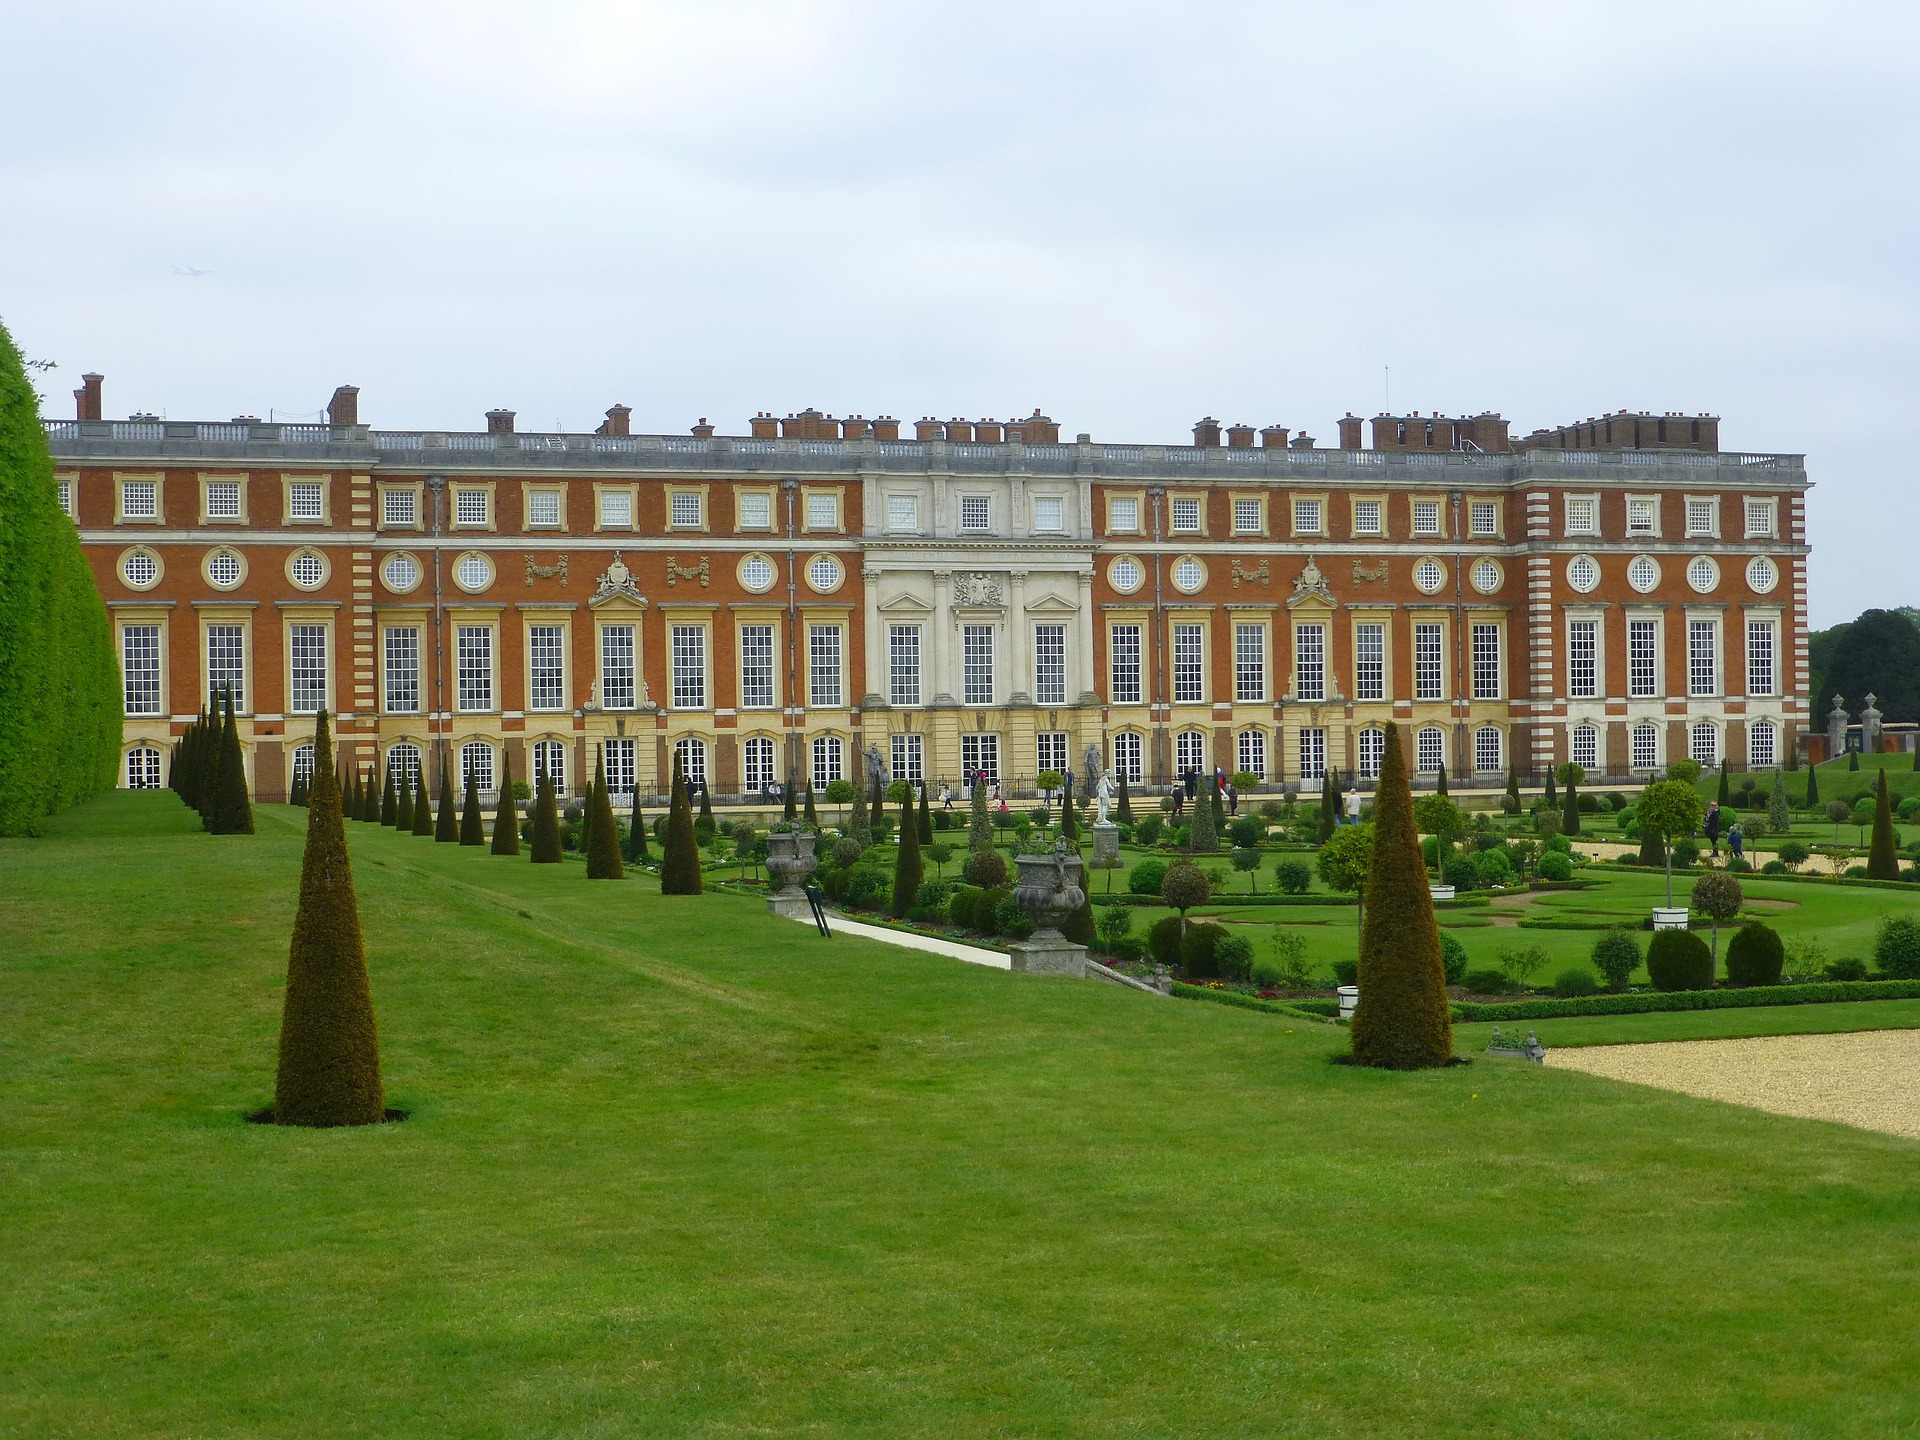 Hampton court